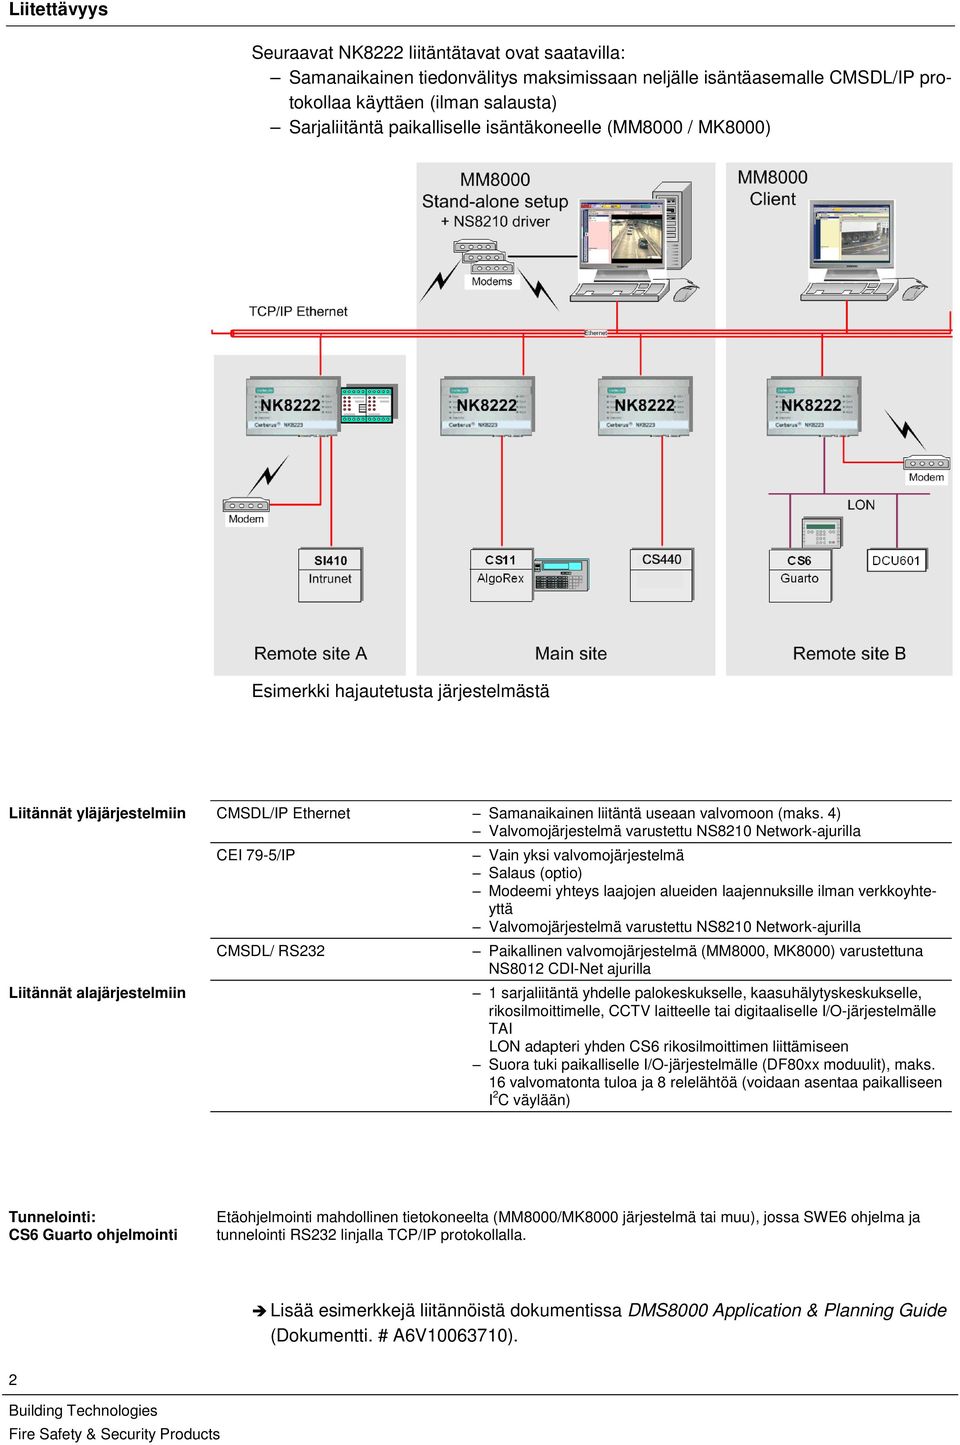 4) Valvomojärjestelmä varustettu NS8210 Network-ajurilla Liitännät alajärjestelmiin CEI 79-5/IP CMSDL/ RS232 Vain yksi valvomojärjestelmä Salaus (optio) Modeemi yhteys laajojen alueiden